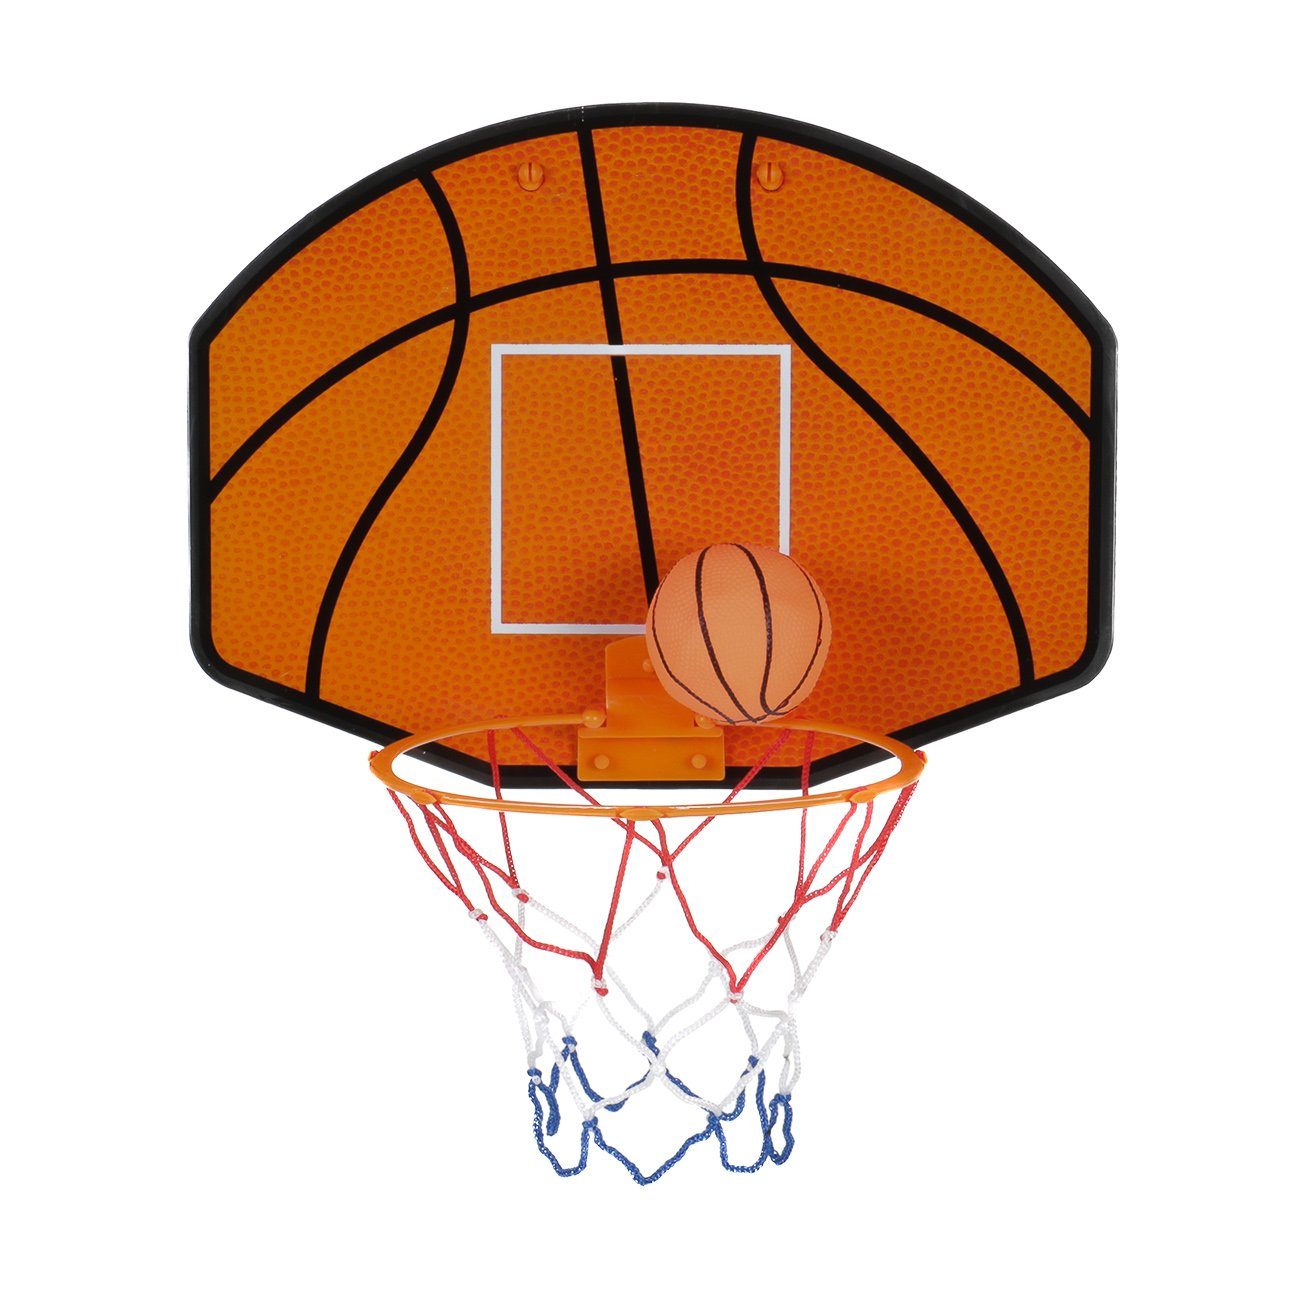 Indoor-Ballspiel ,a Mini-Basketball-Brett mit Rückwand für Kinder 